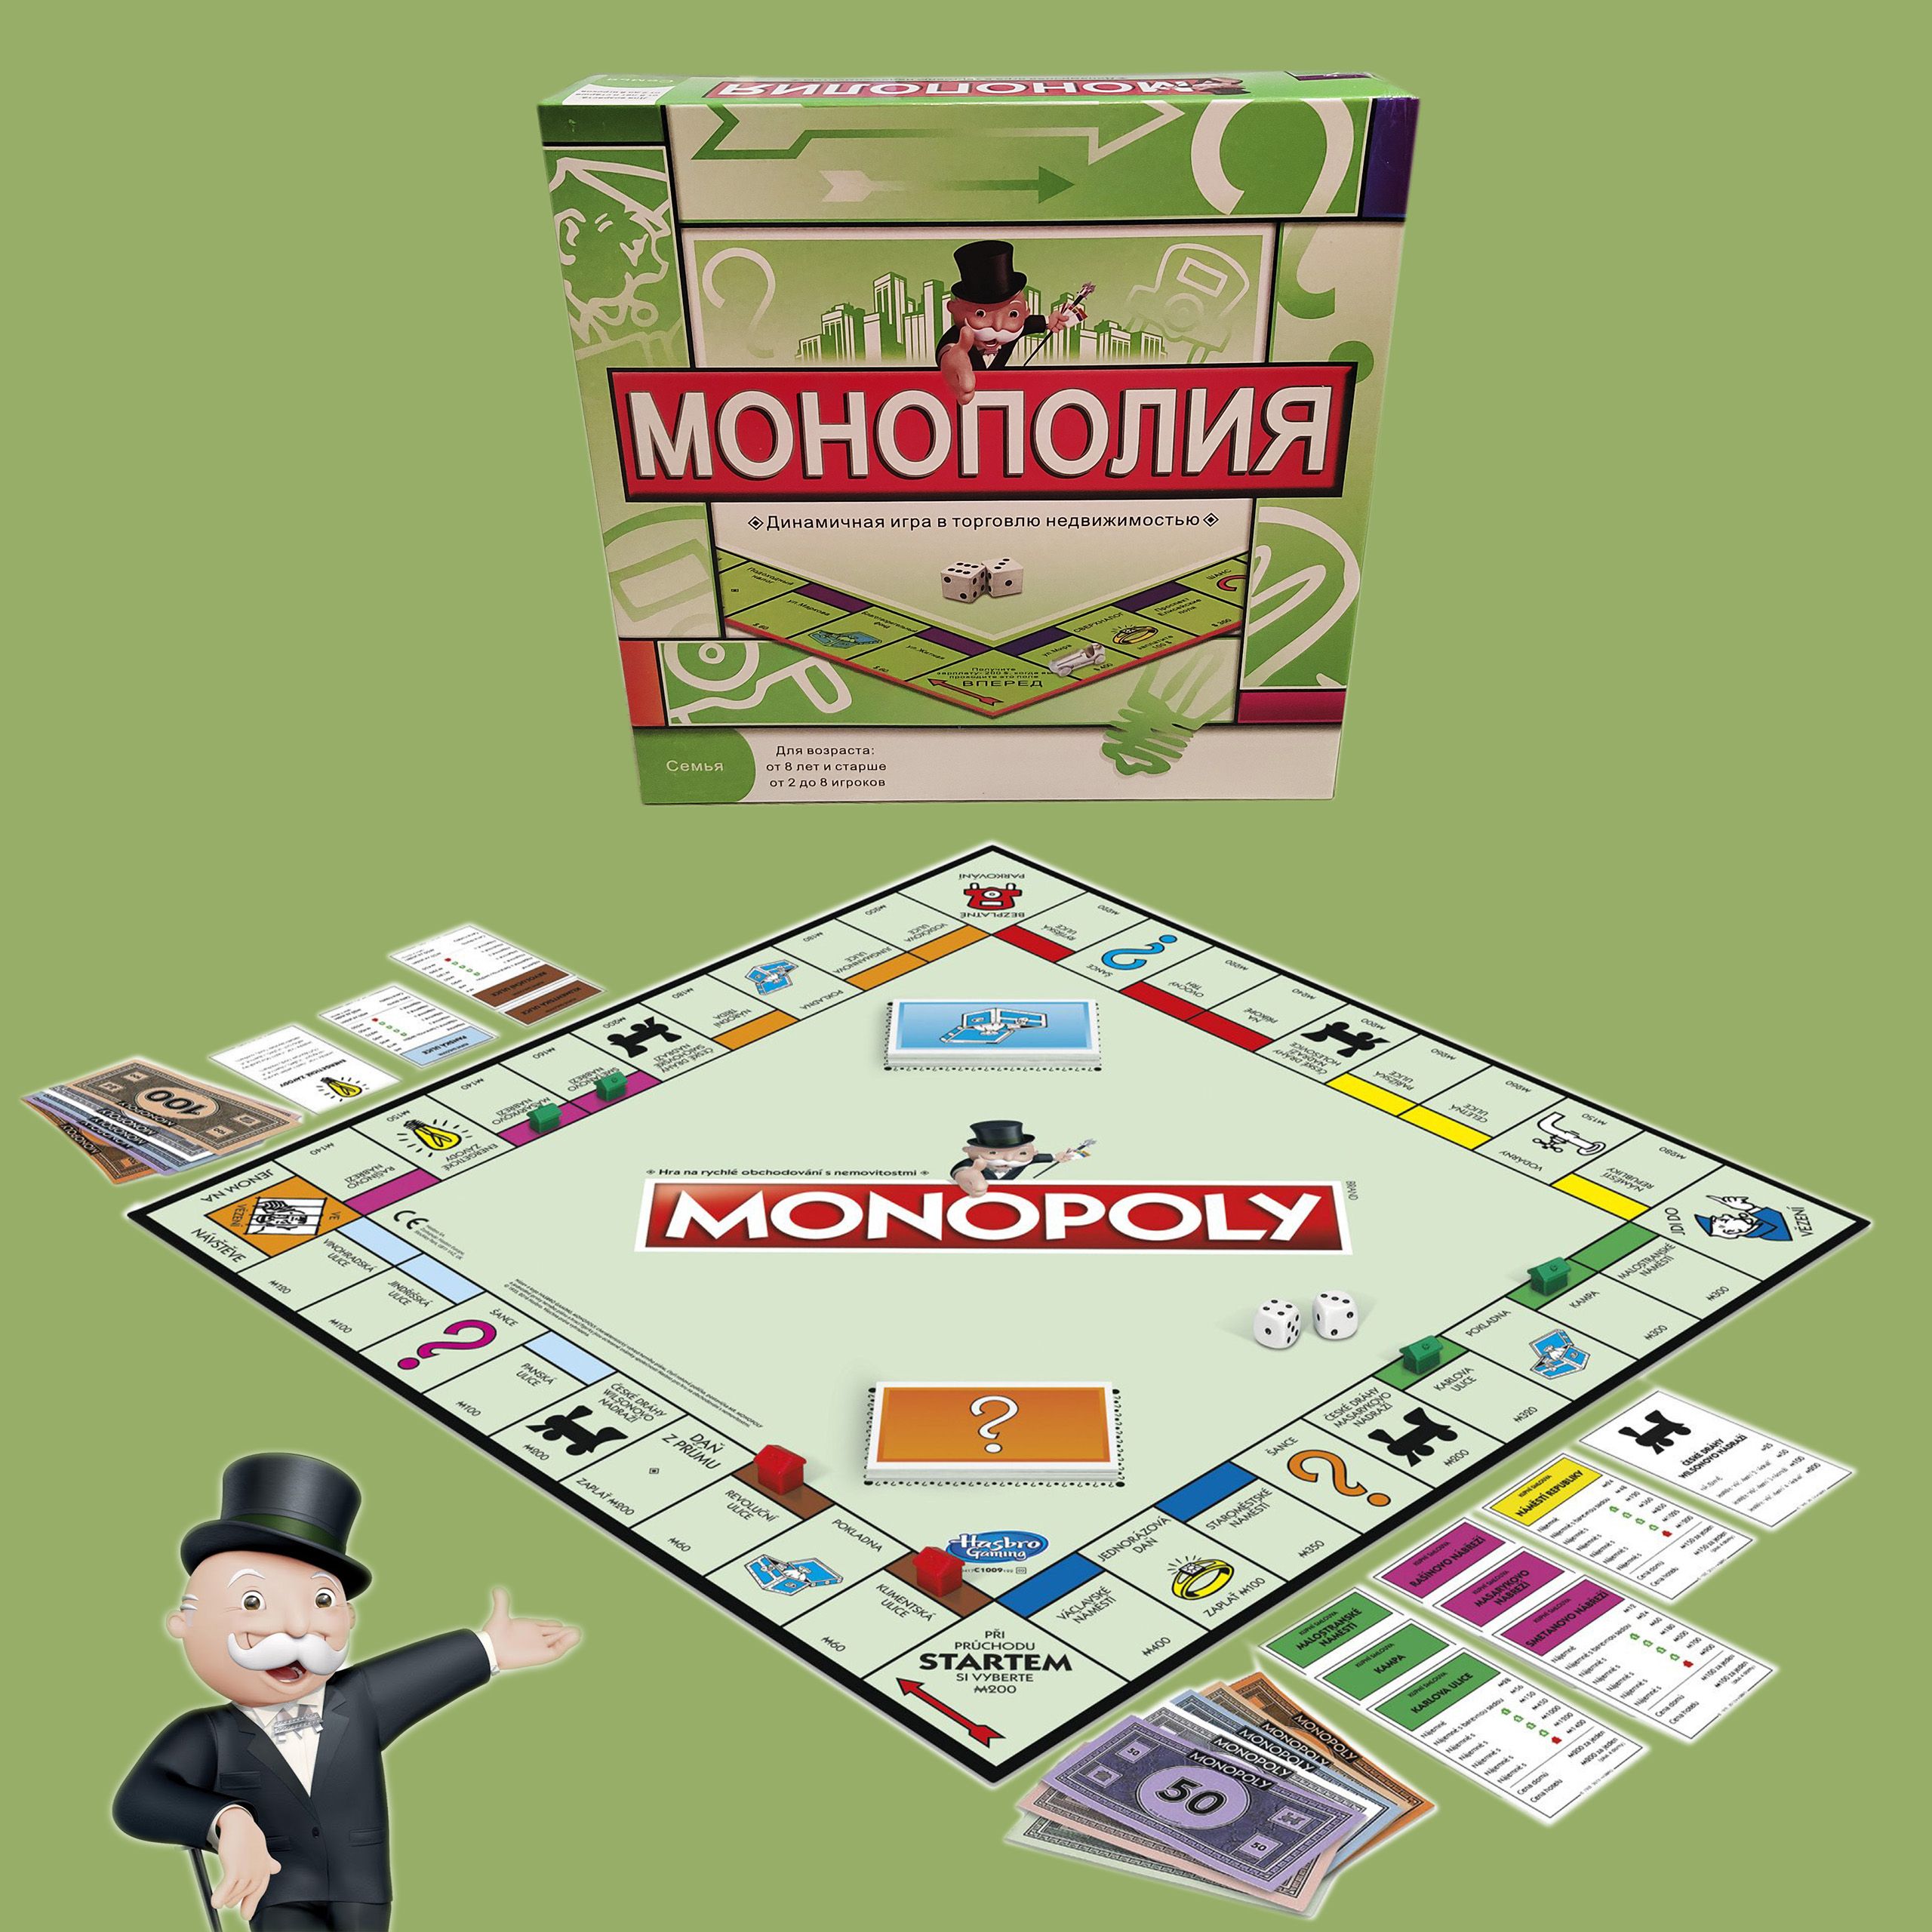 Монополия Классическая (Monopoly) Настольная игра – обзор, правила